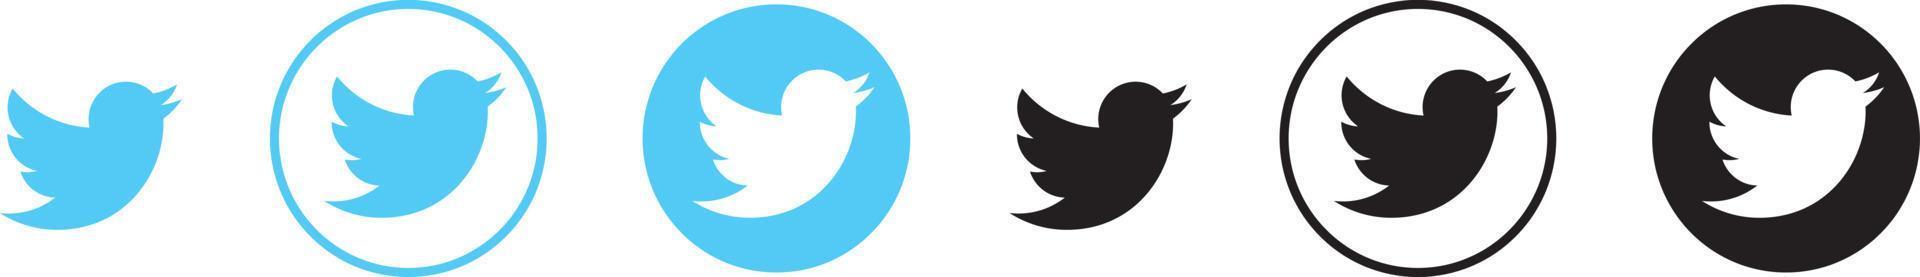 logo twitter icône ronde de couleur bleu clair vecteur